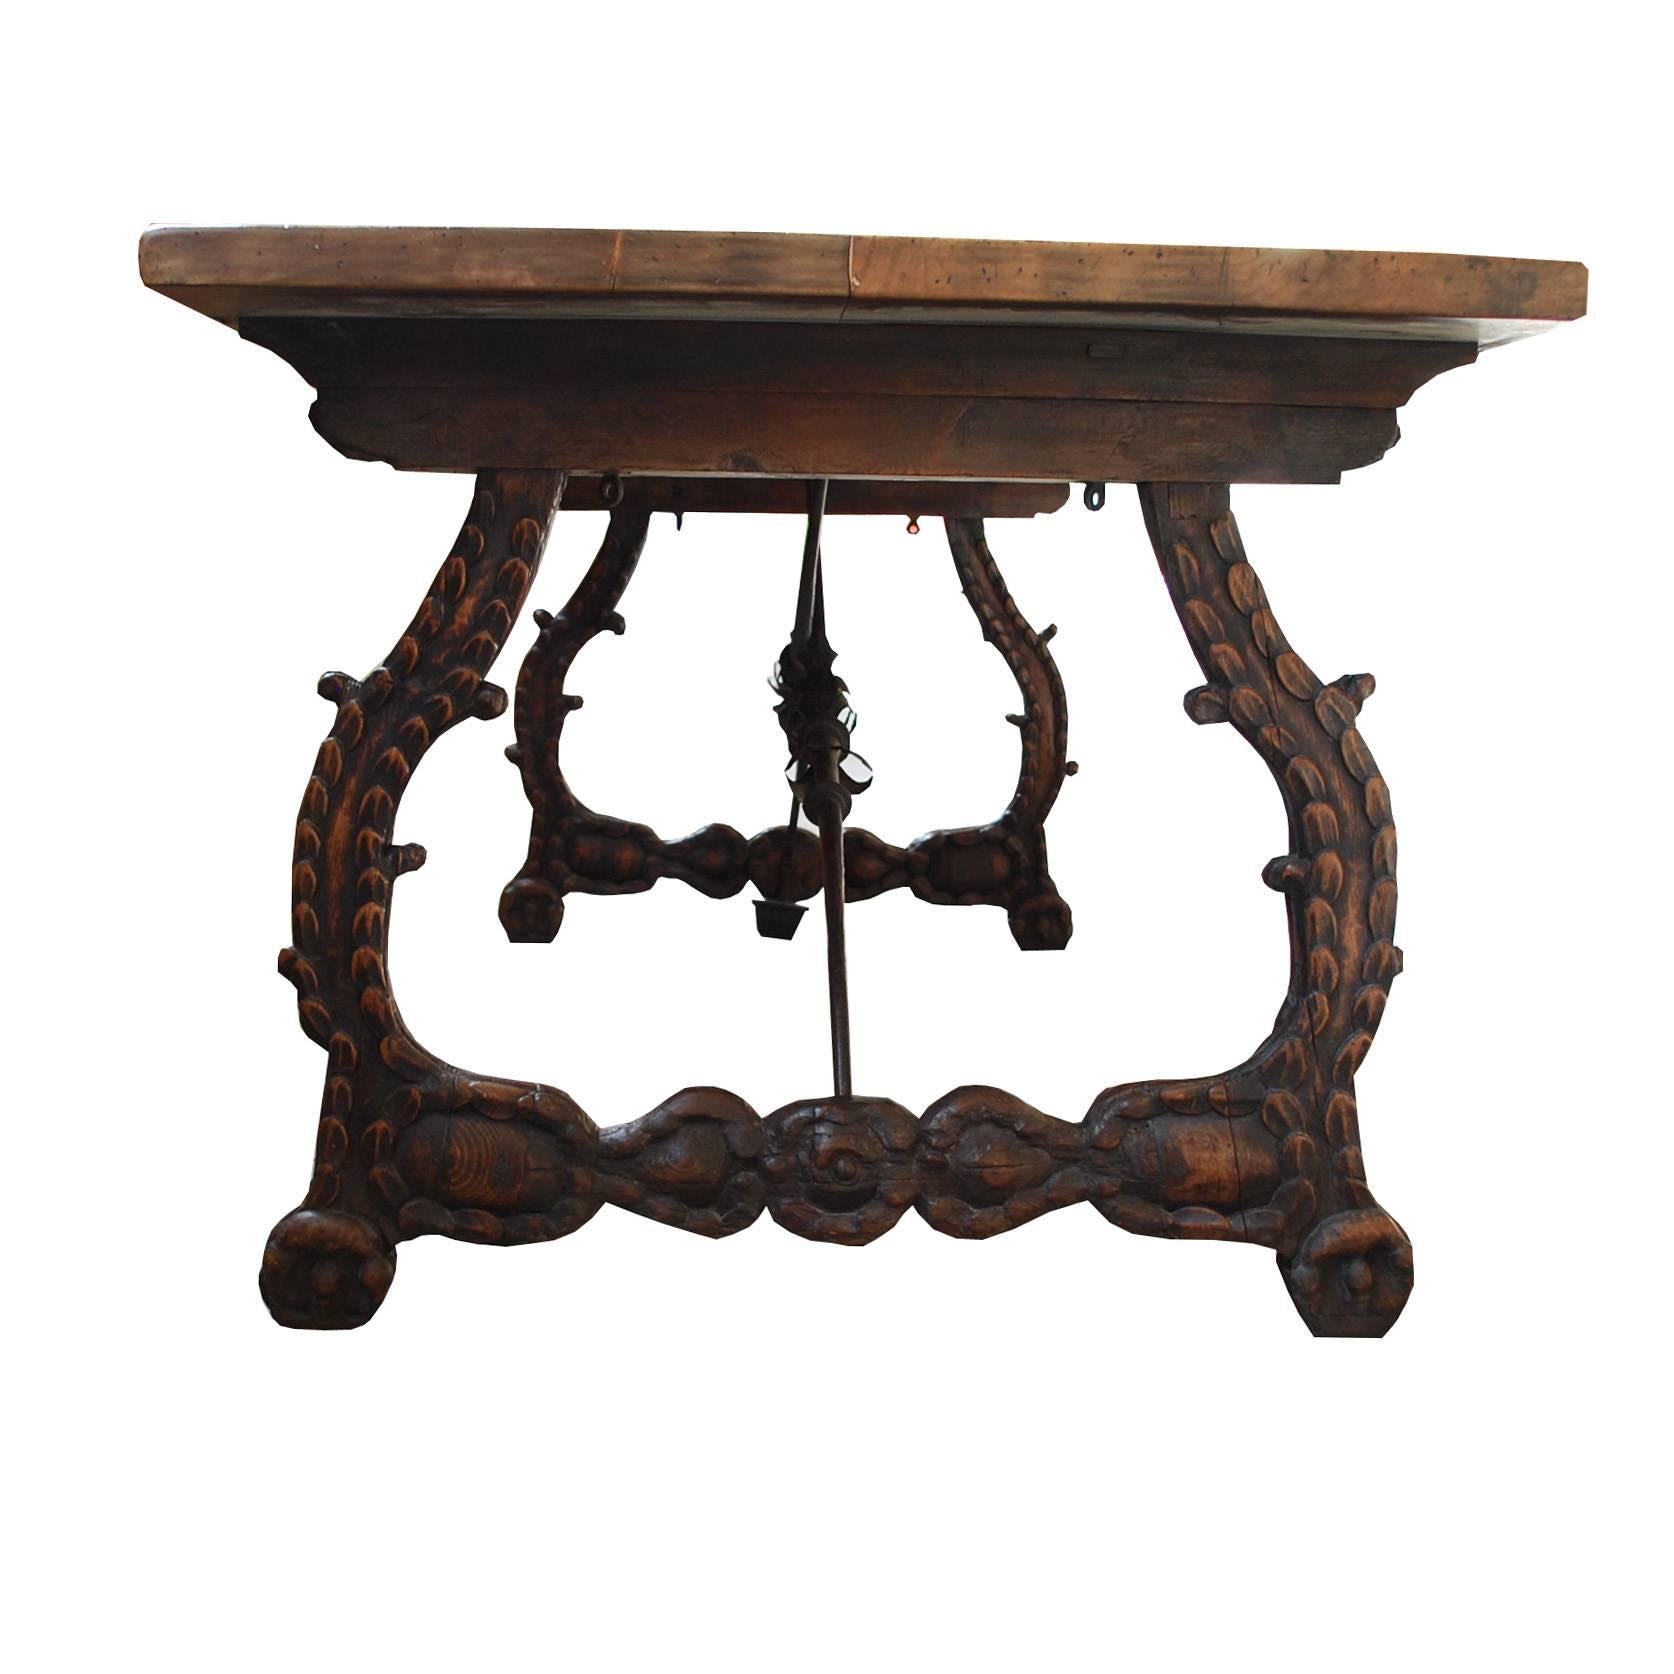 Antiker spanischer Tisch mit Sockel aus Schmiedeeisen und Nussbaumholz aus dem 17. Jahrhundert und restaurierter Platte aus dem 19.
Stammt aus Spanien und ist um 1750 entstanden.
(Versandkosten auf Anfrage, abhängig vom Zielort).